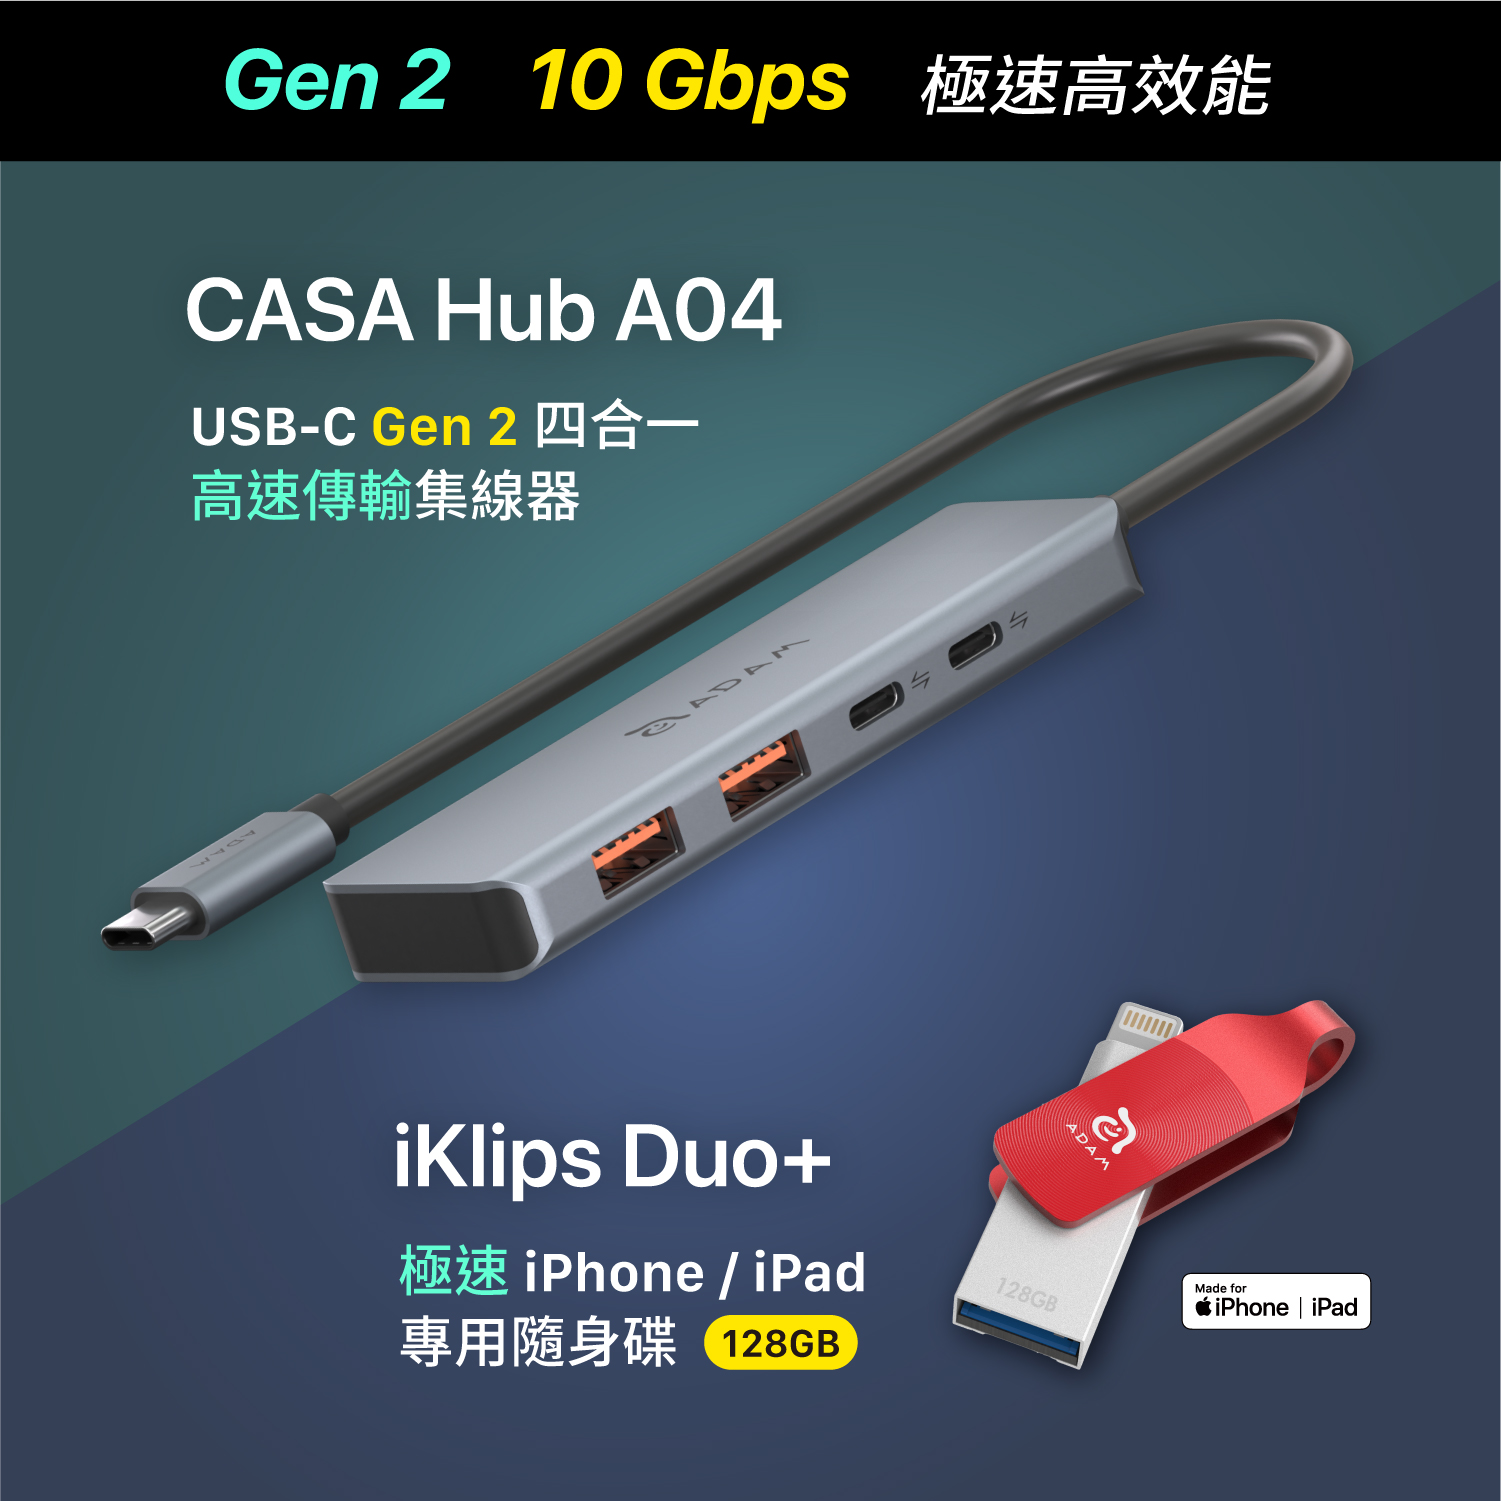 CASA Hub A04 USB-C Gen2 四合一高速集線器_iKlips Duo+ 極速iPhone/iPad專用隨身碟 128GB